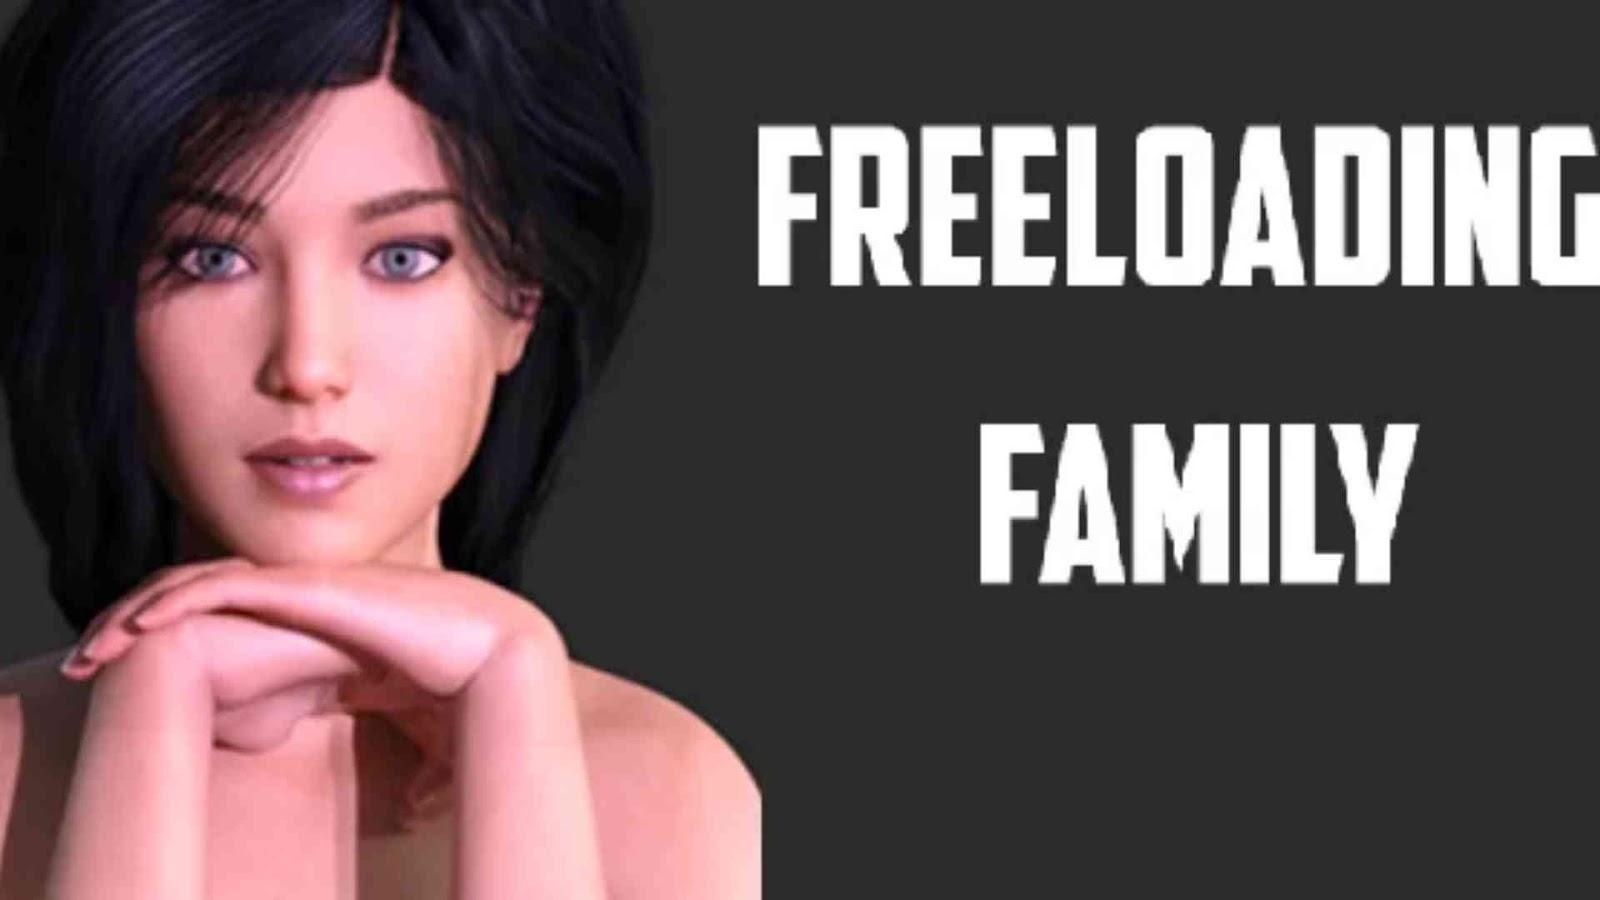 Freeloading Family